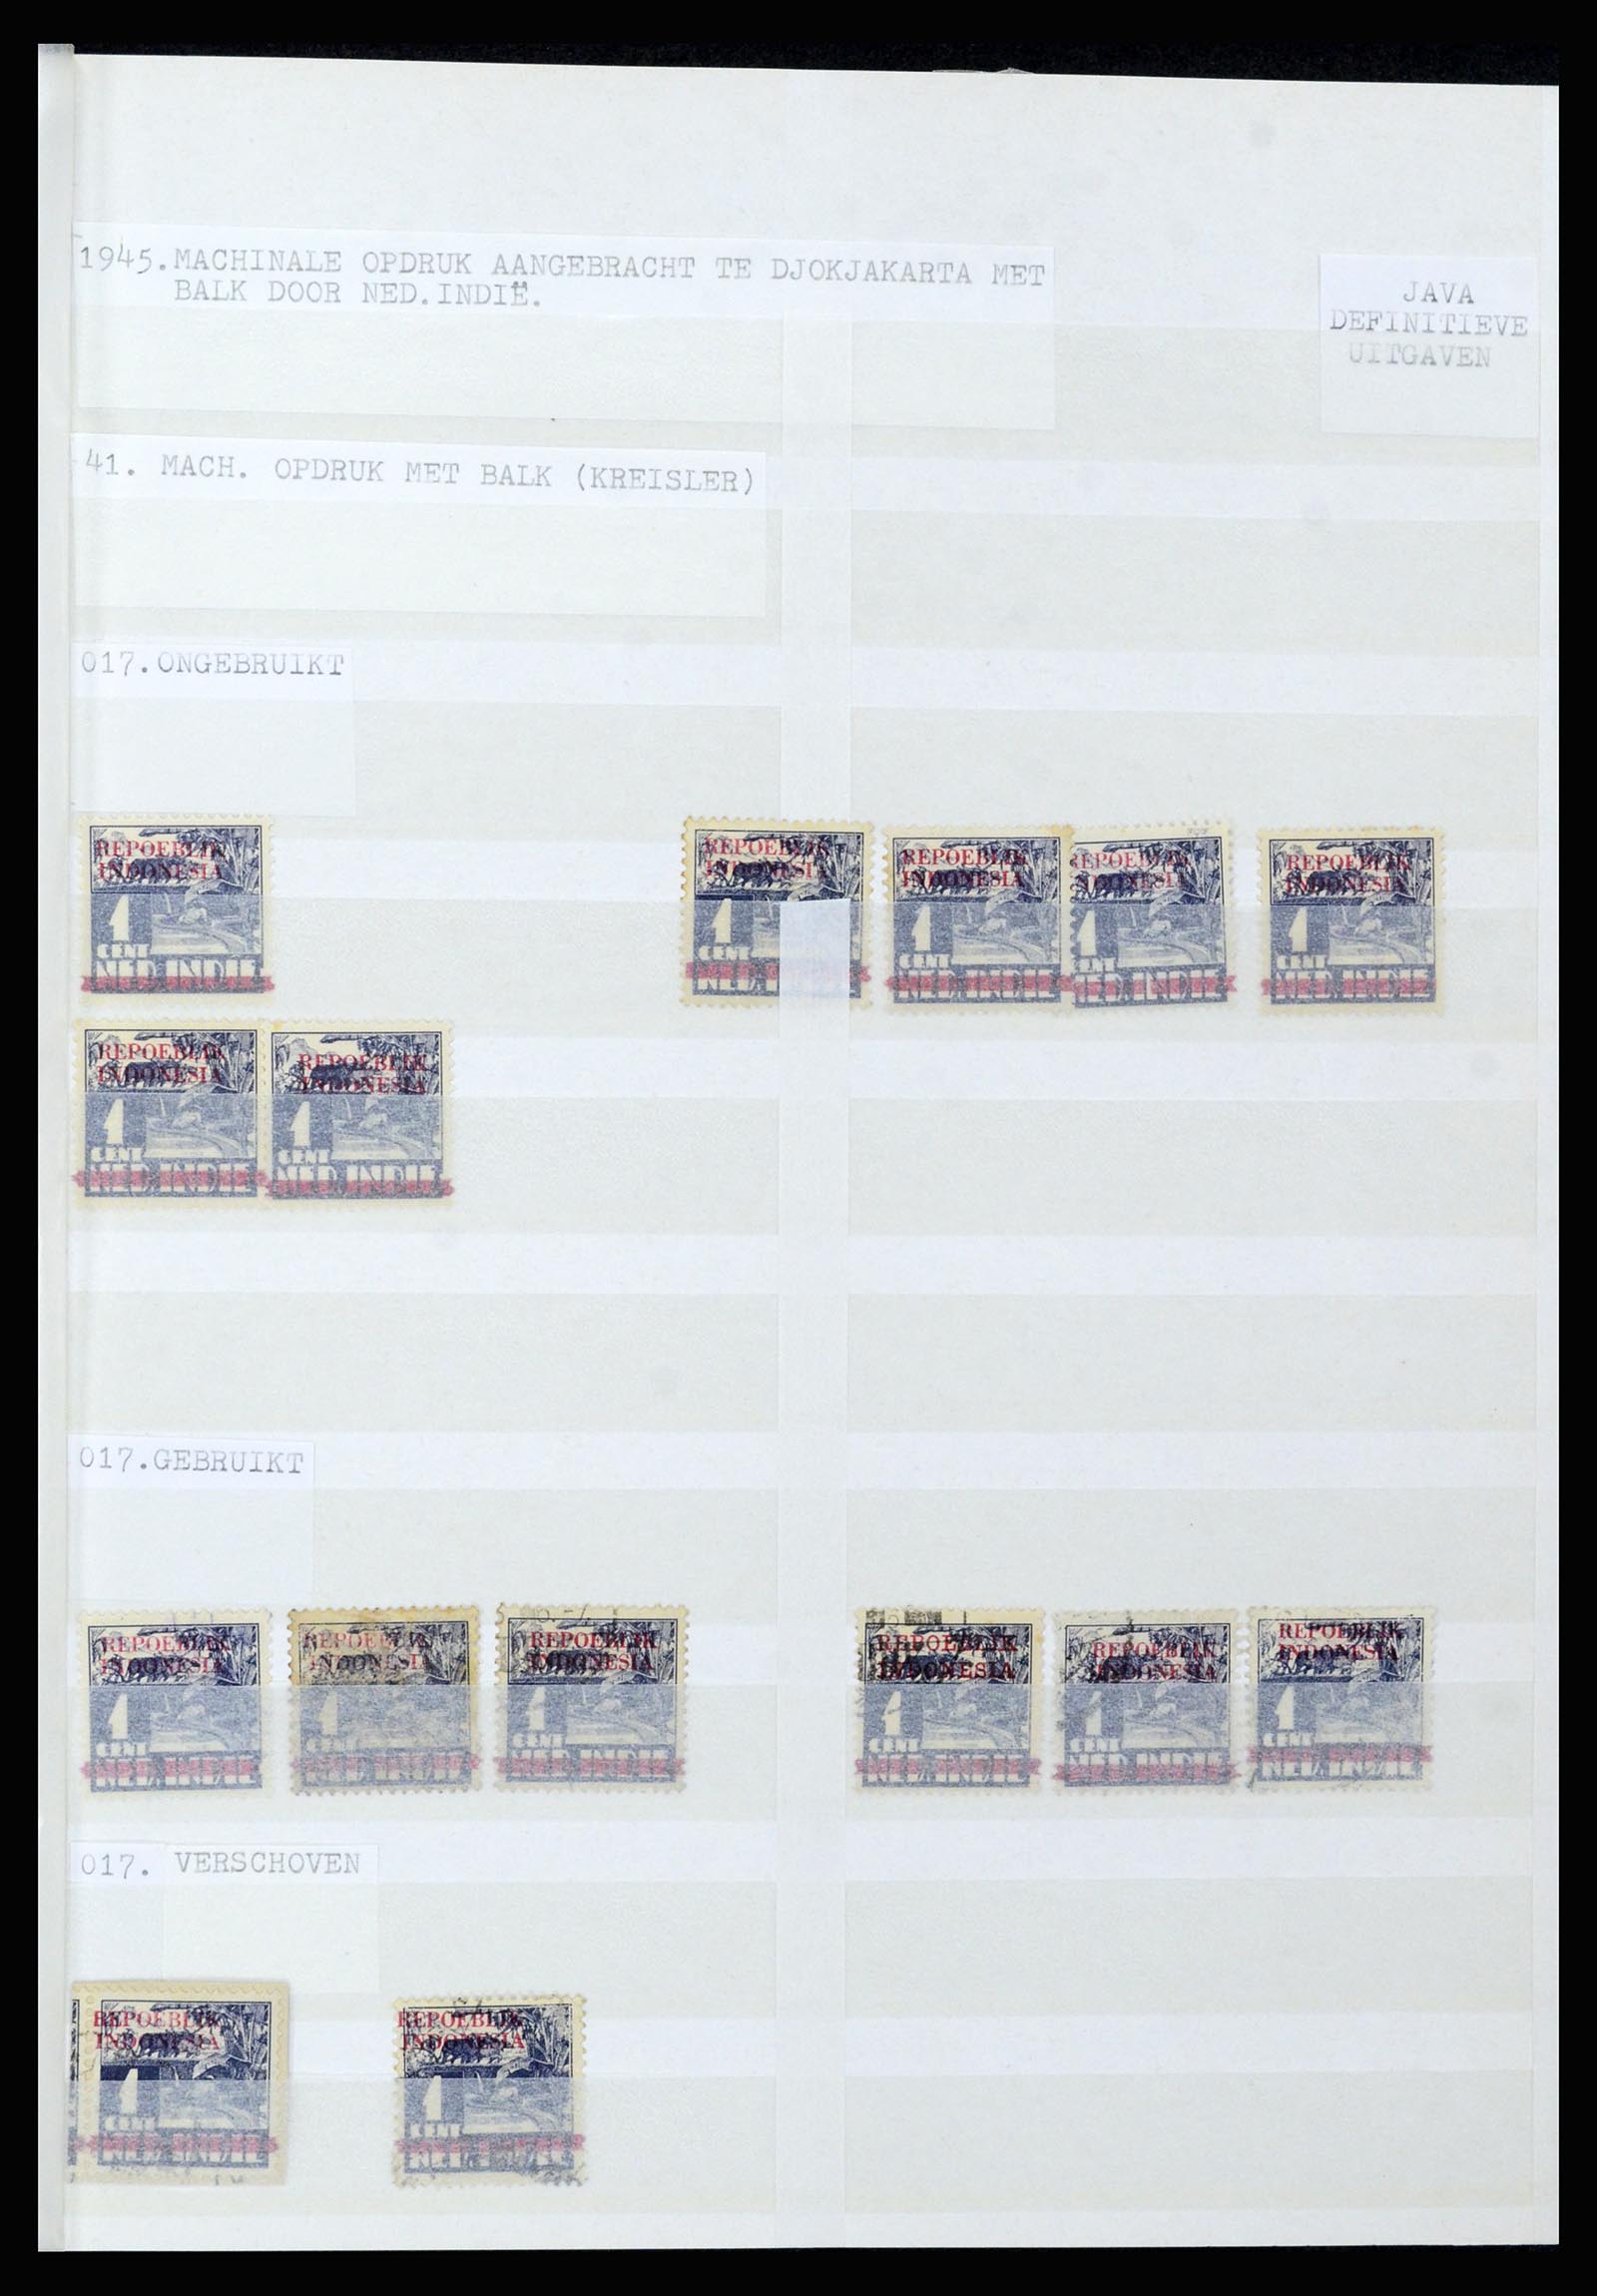 36742 066 - Stamp collection 36742 Dutch Indies interim period 1945-1949.